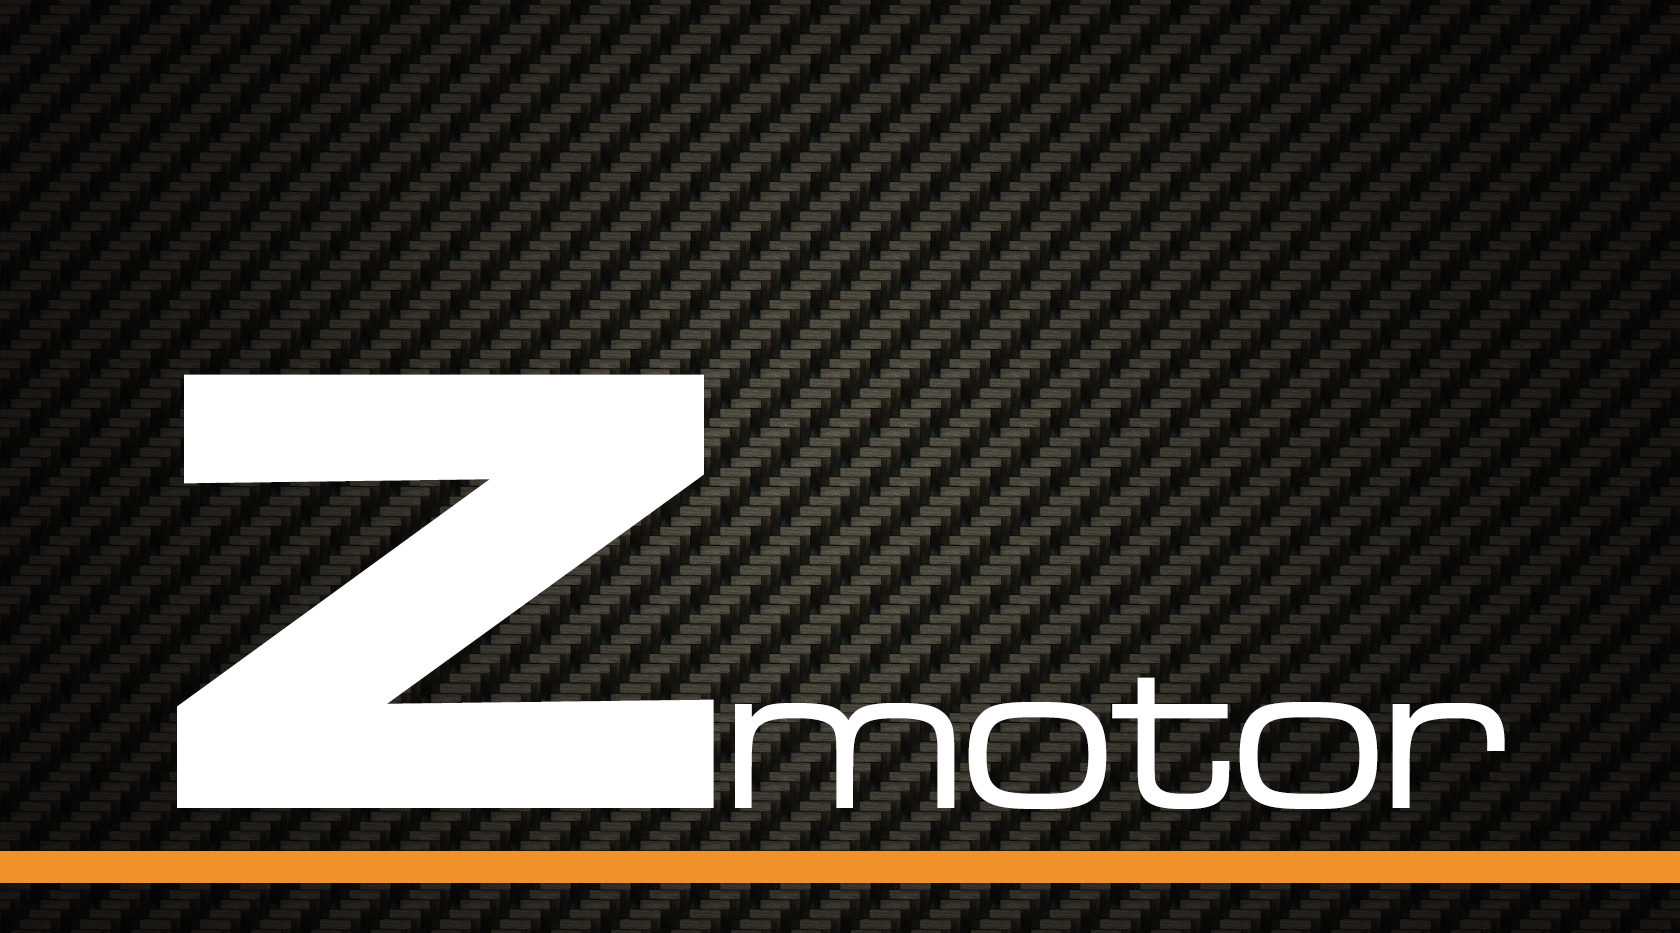 Logo Z Motor